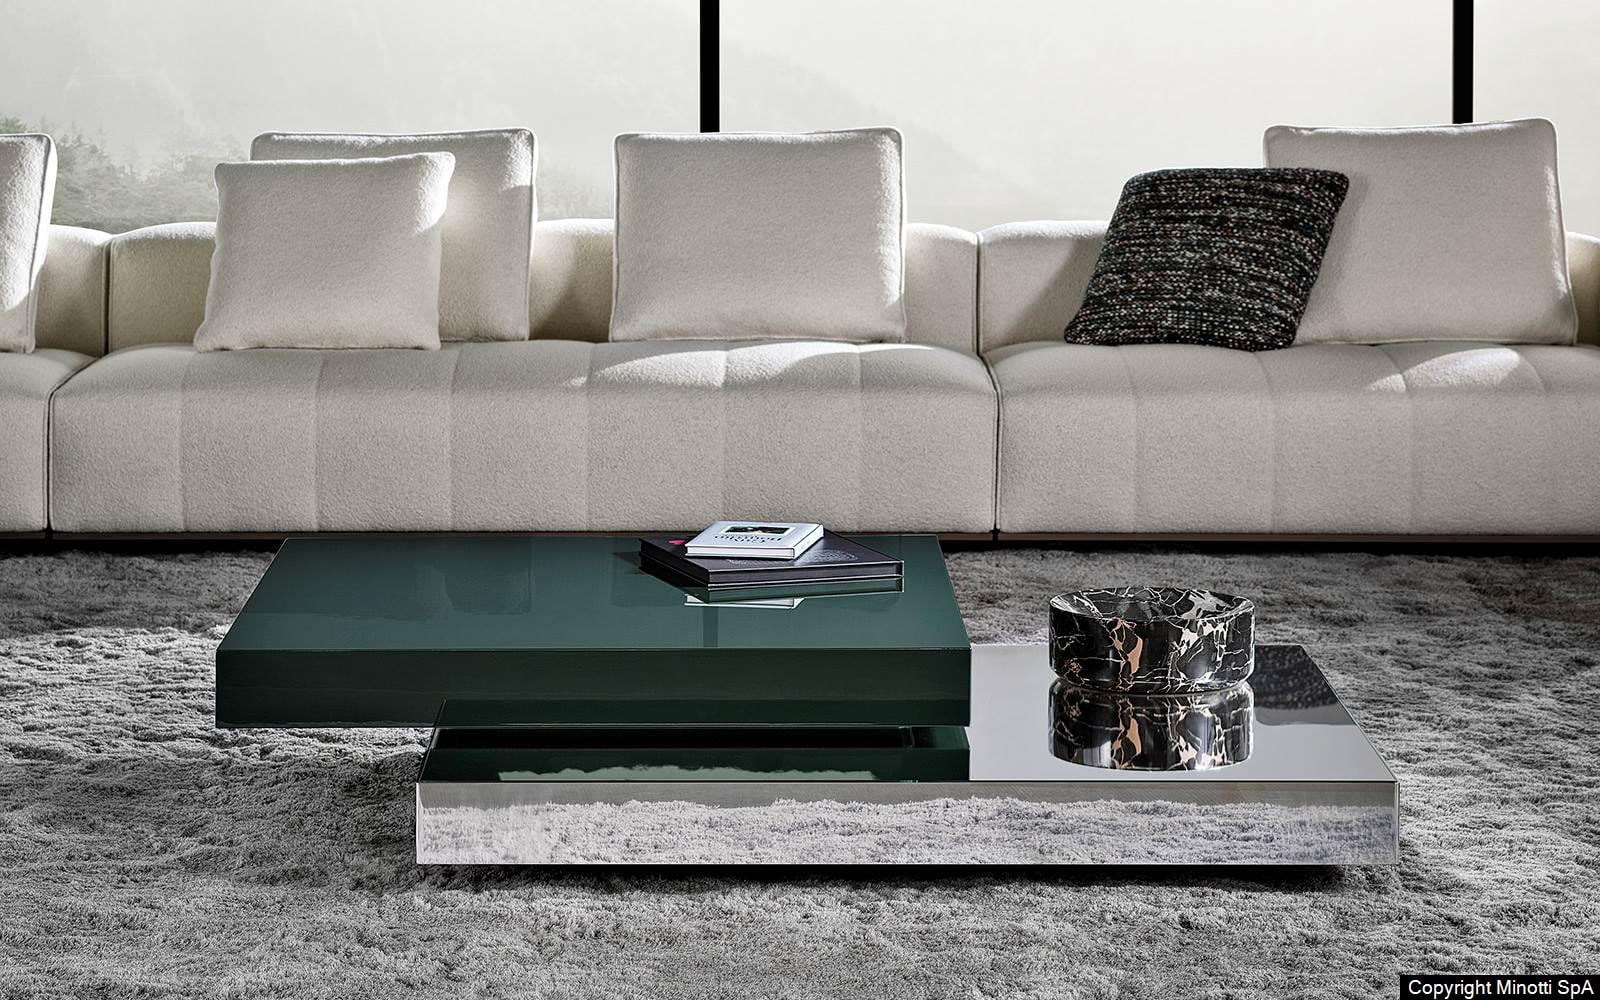 Minotti Solid Steel salontafel groen hoogglans en spiegelend materiaal vierkant